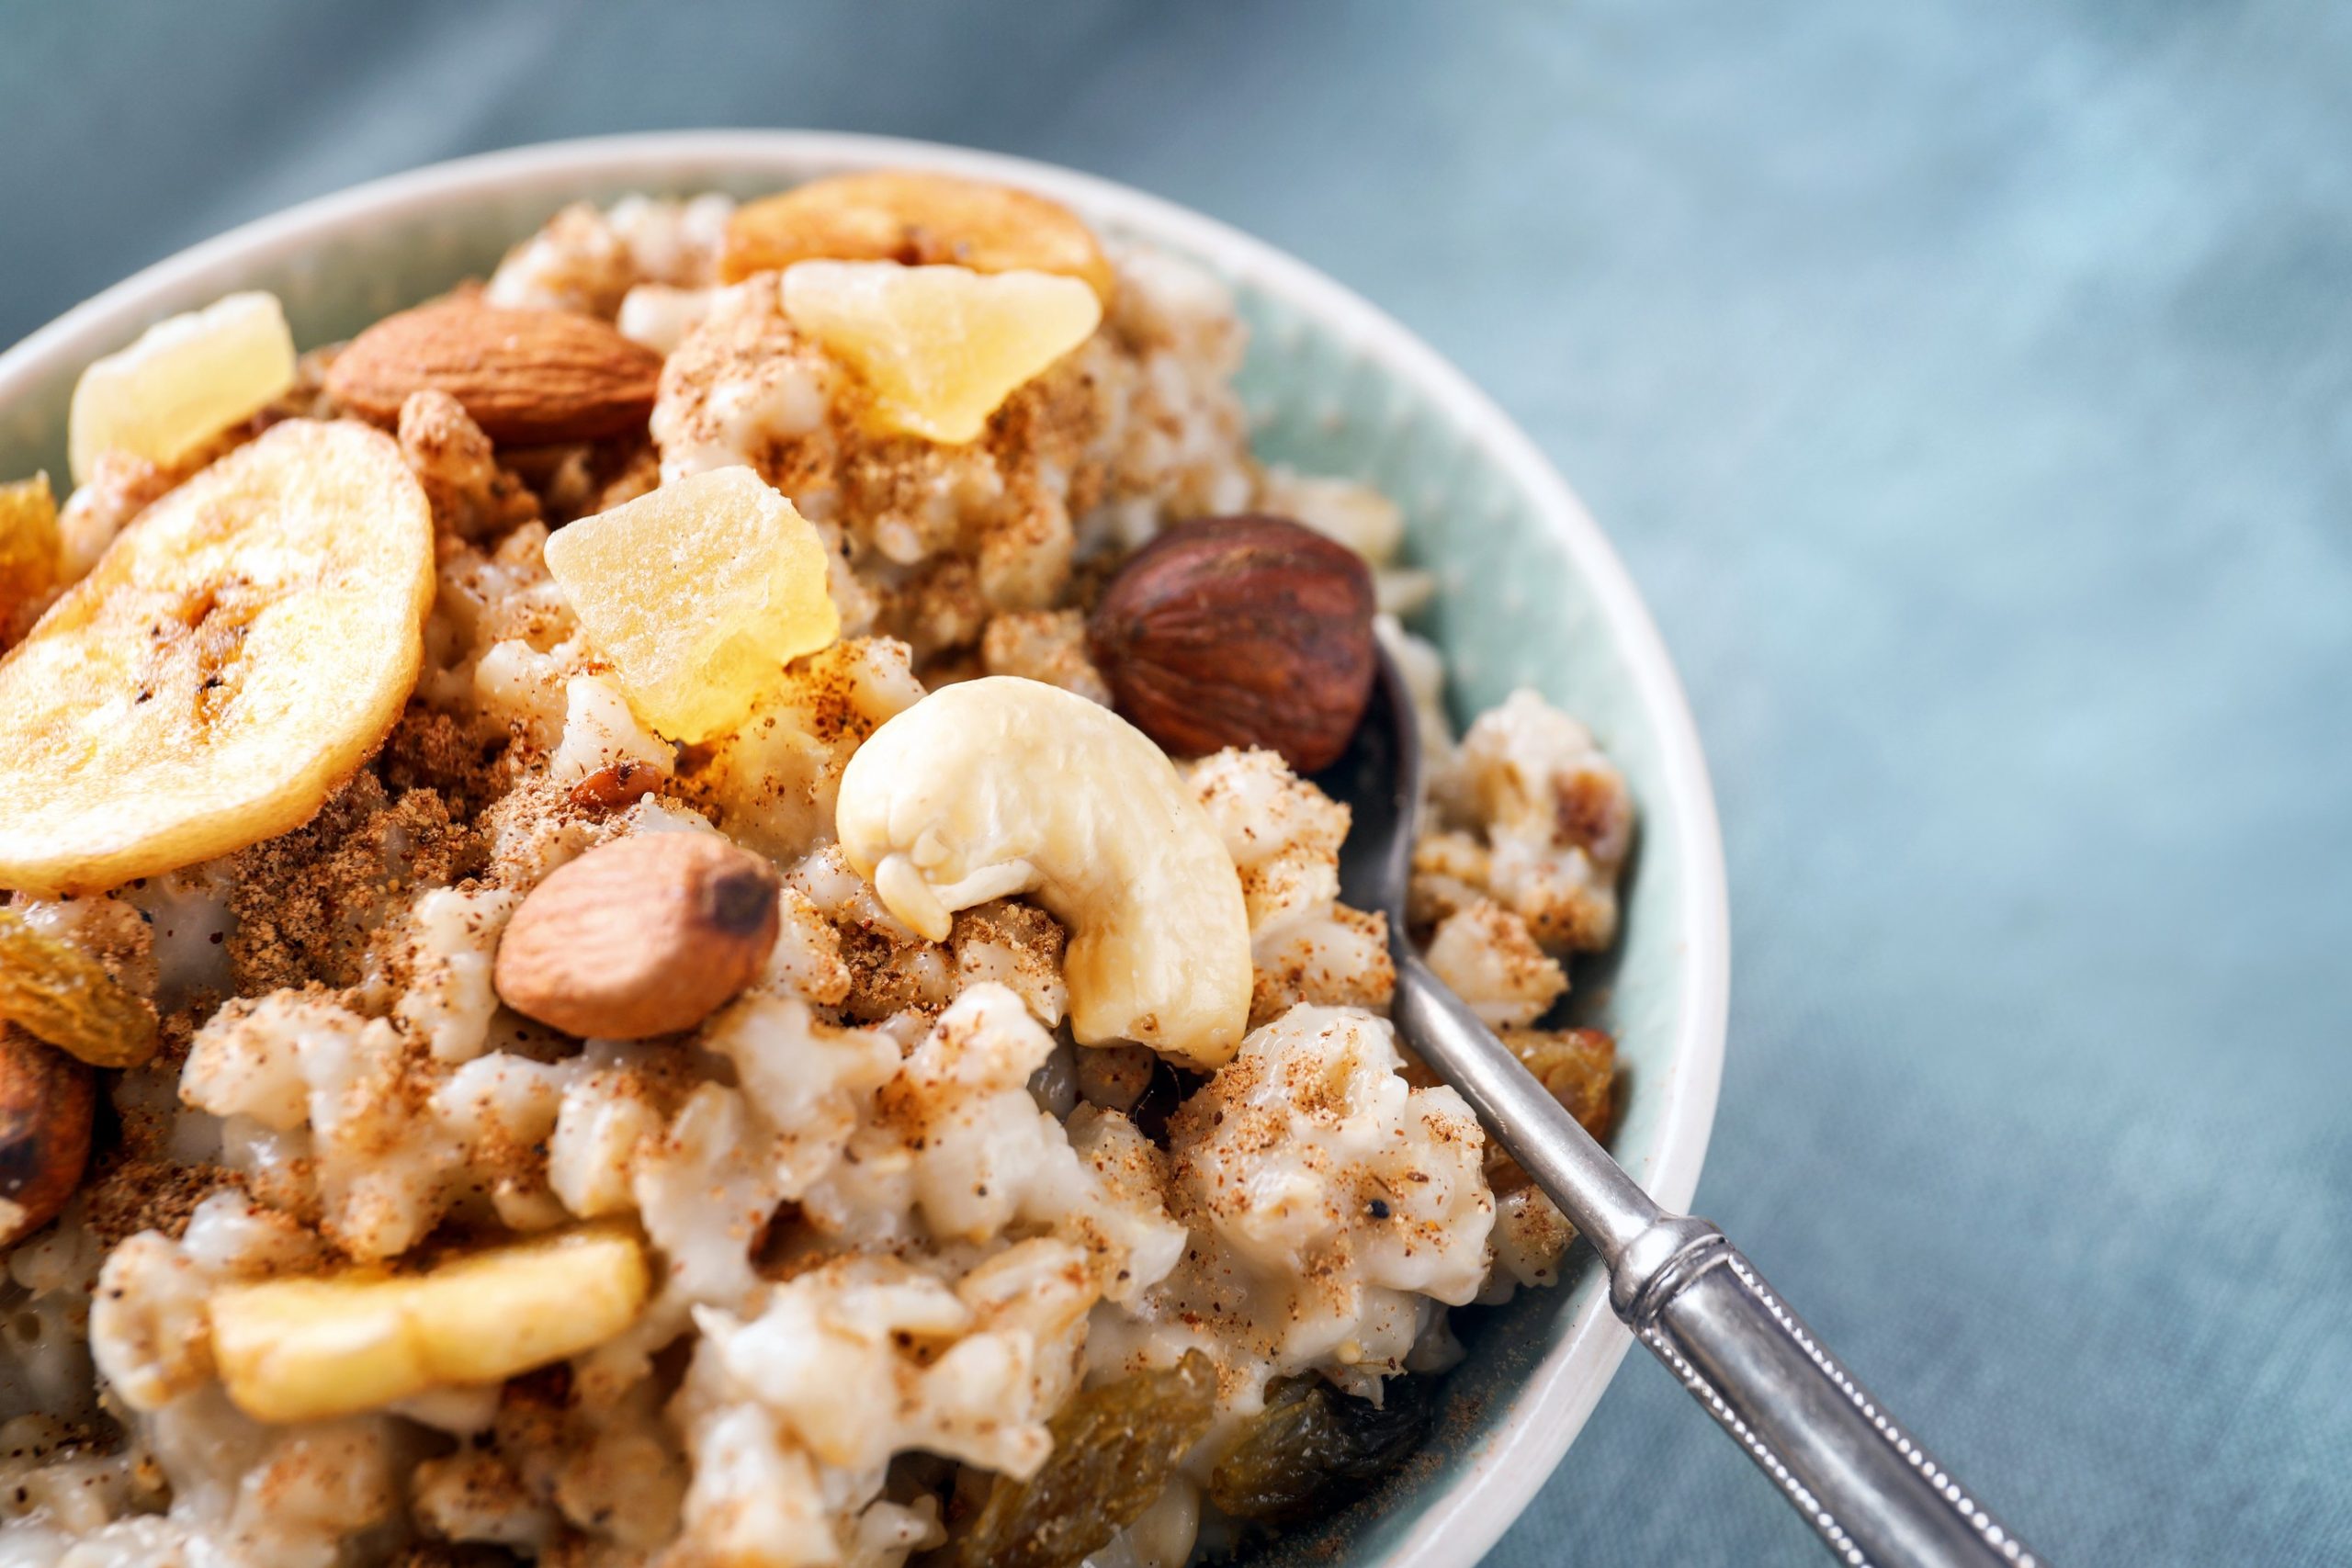 Sacramento Breakfast Choices | Office Snacks | Healthy Oatmeal Options